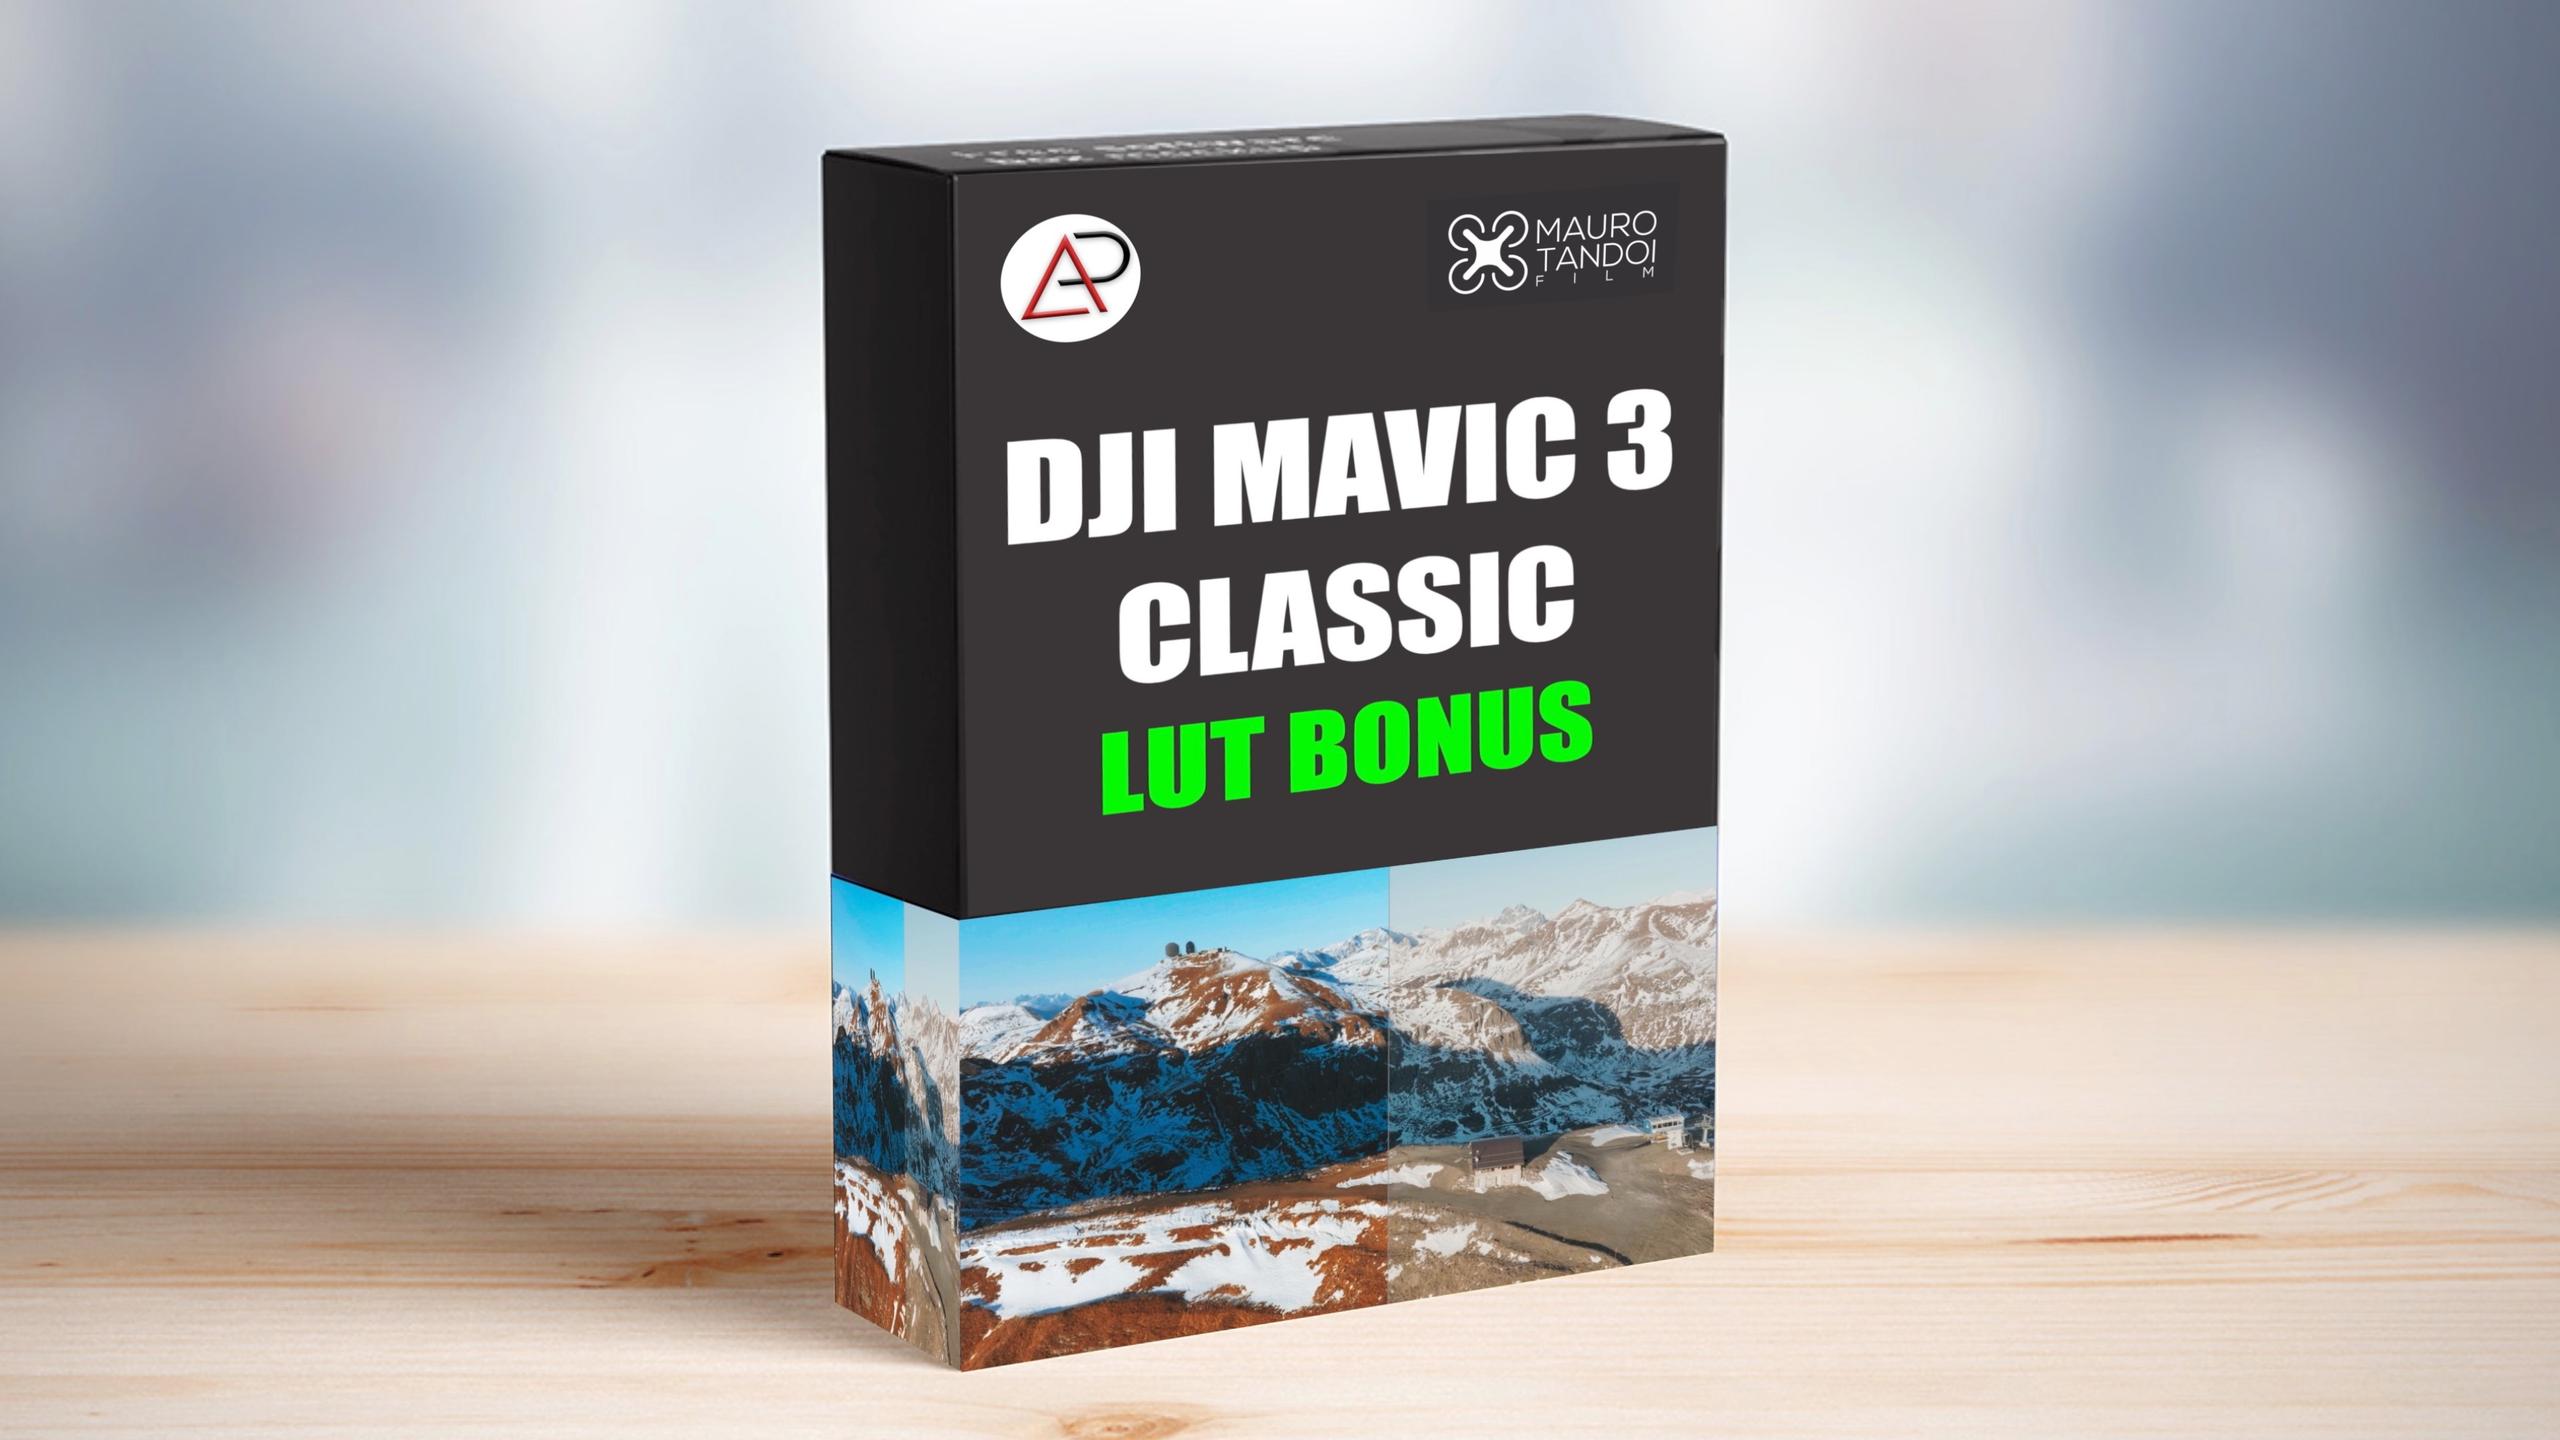 DJI MAVIC 3 CLASSIC LUT BONUS